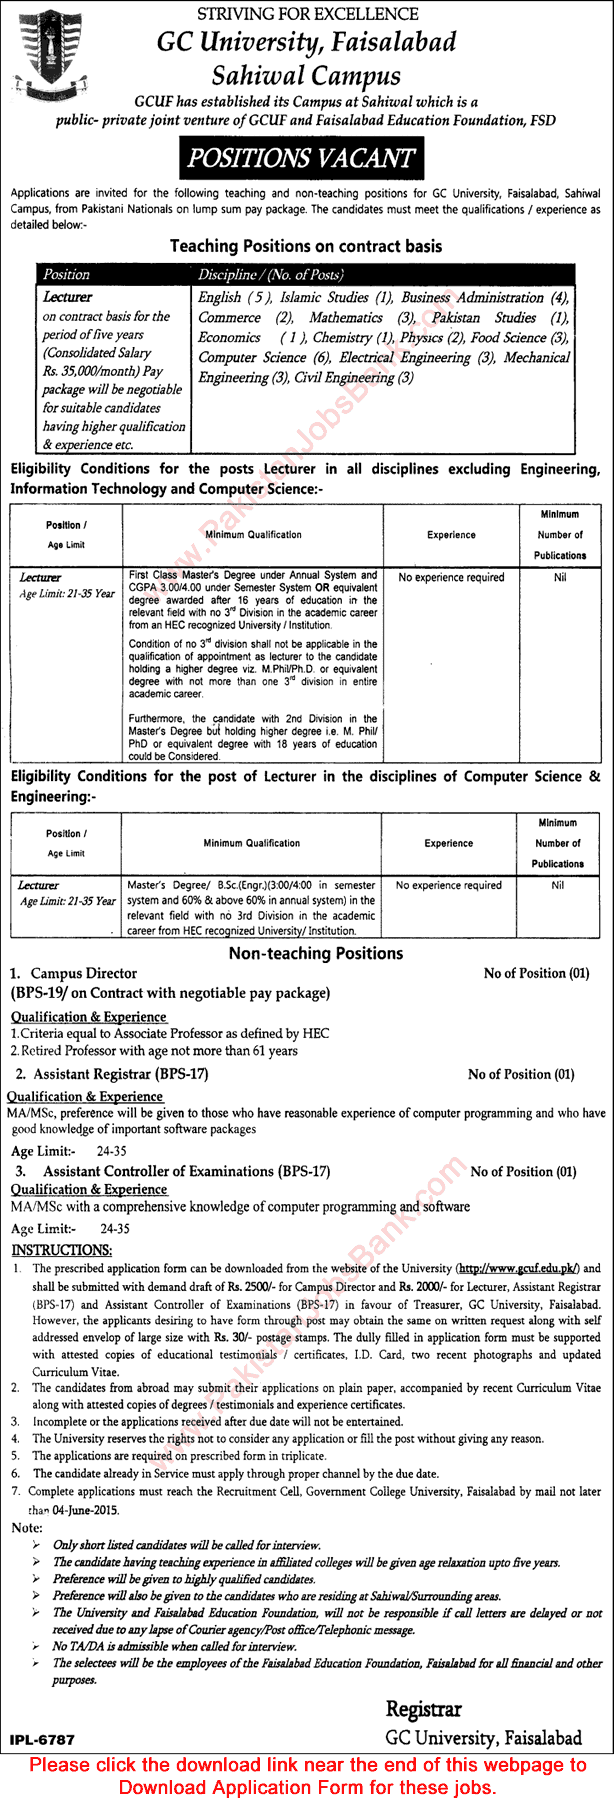 Admin & Teaching Vacancies in GC University Faisalabad Sahiwal Campus 2015 May Application Form